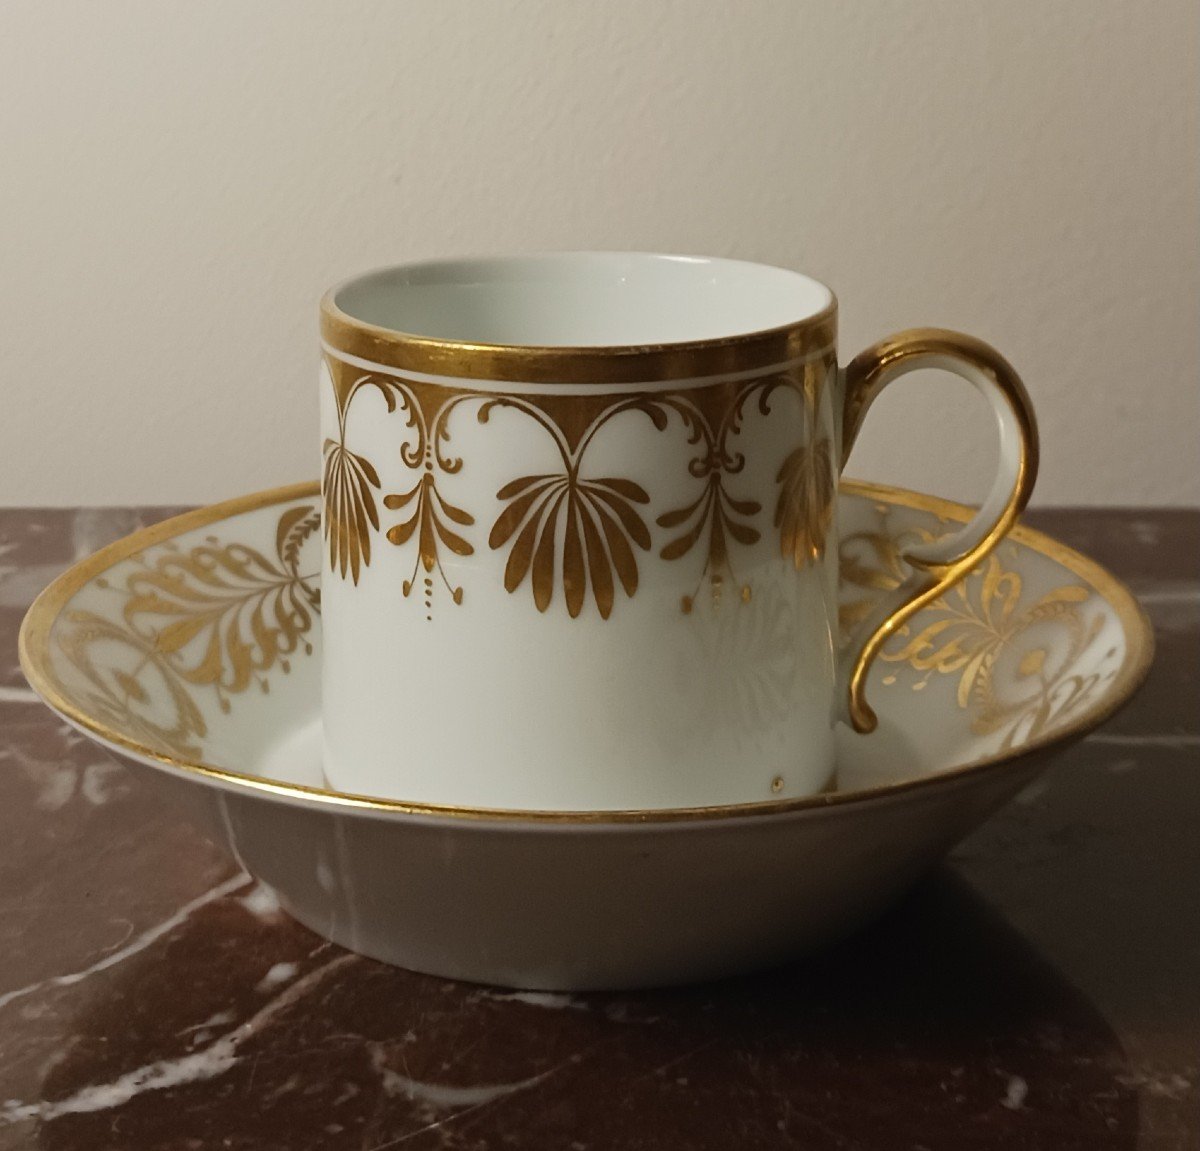 Tasse à café Madame de Récamier - Lignes dorées